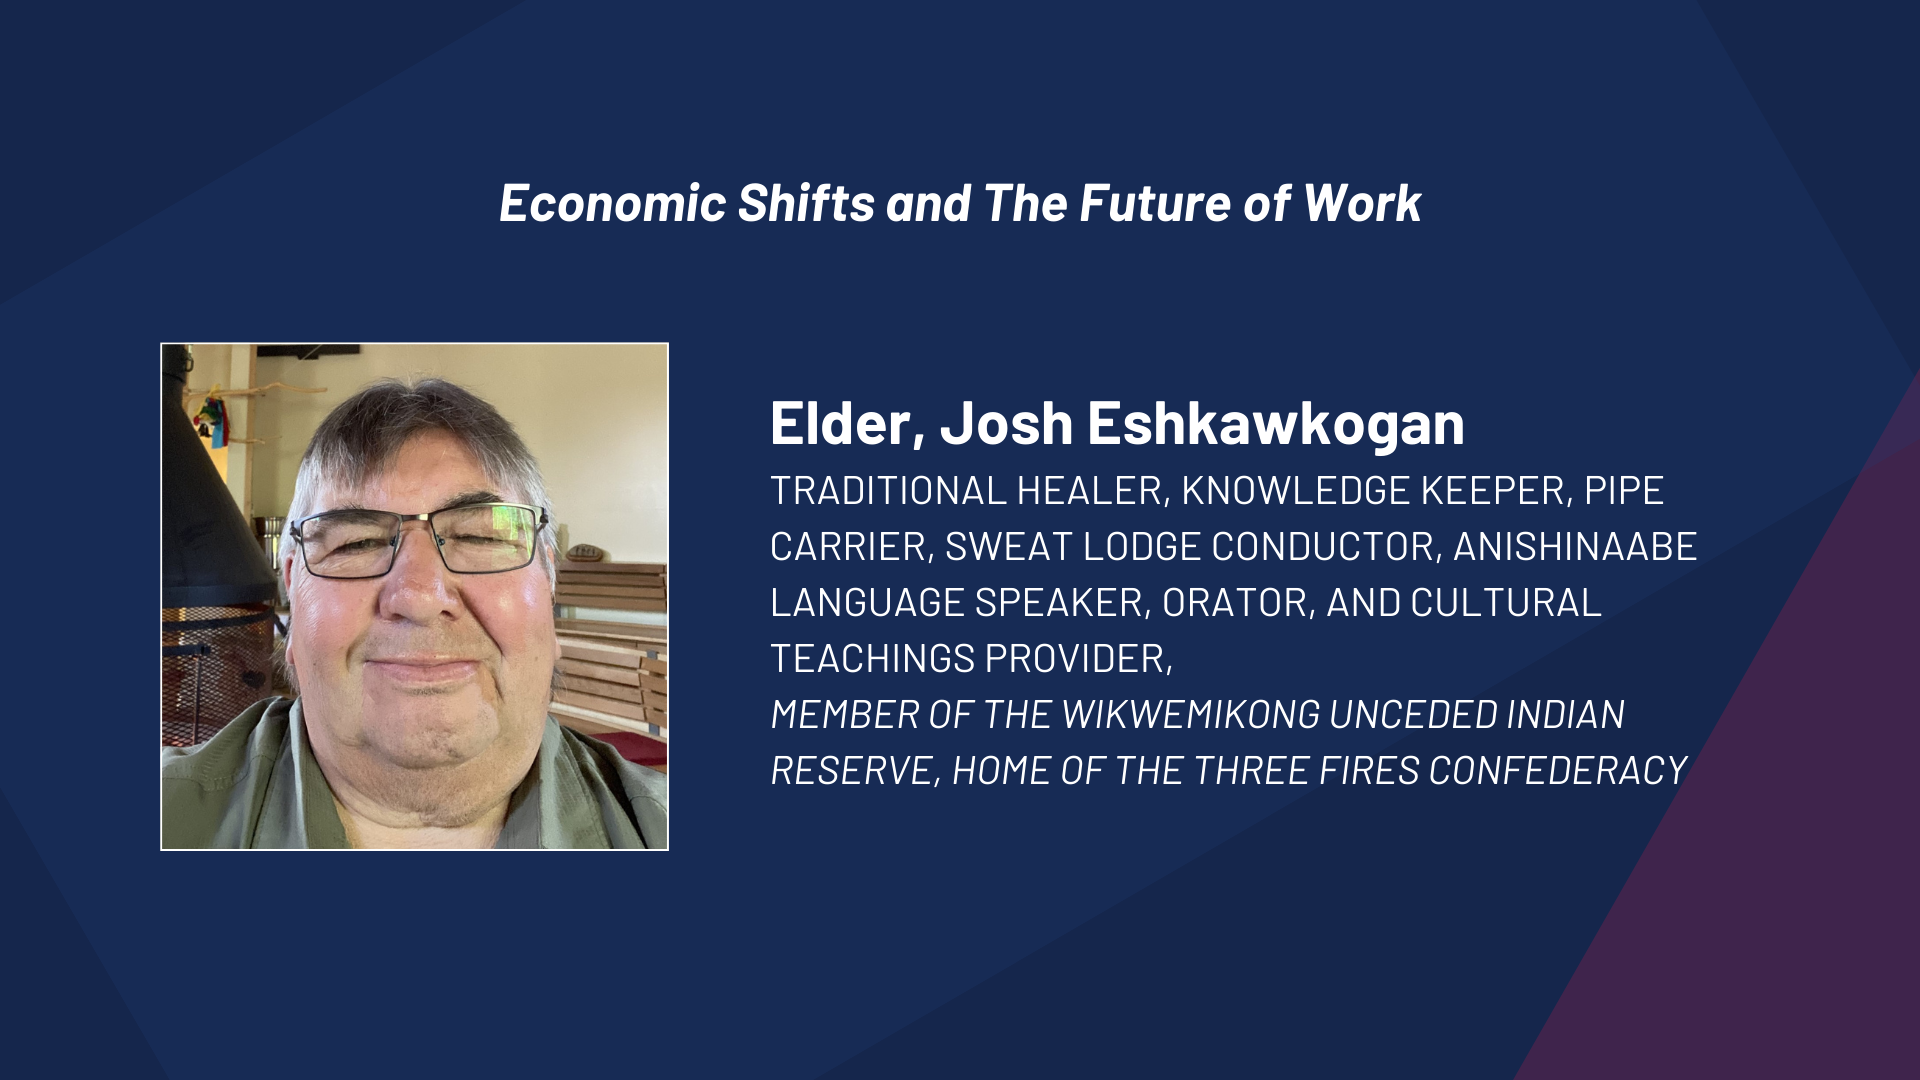 Elder Josh Eshkawkogan